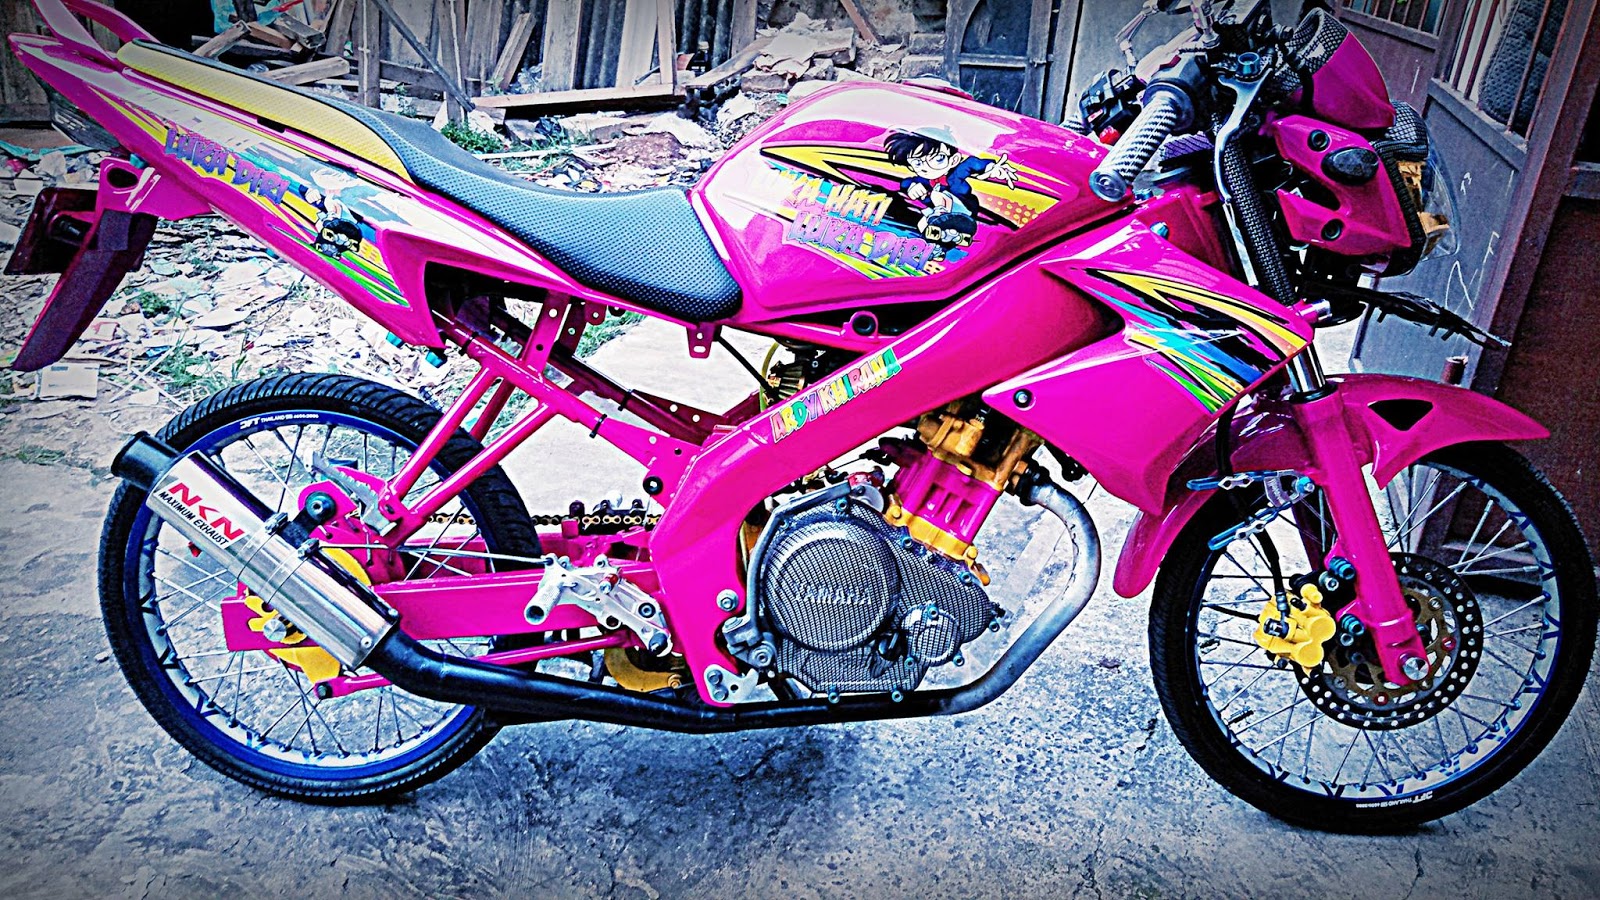 Modif Motor Astrea Warna Pink - Radea